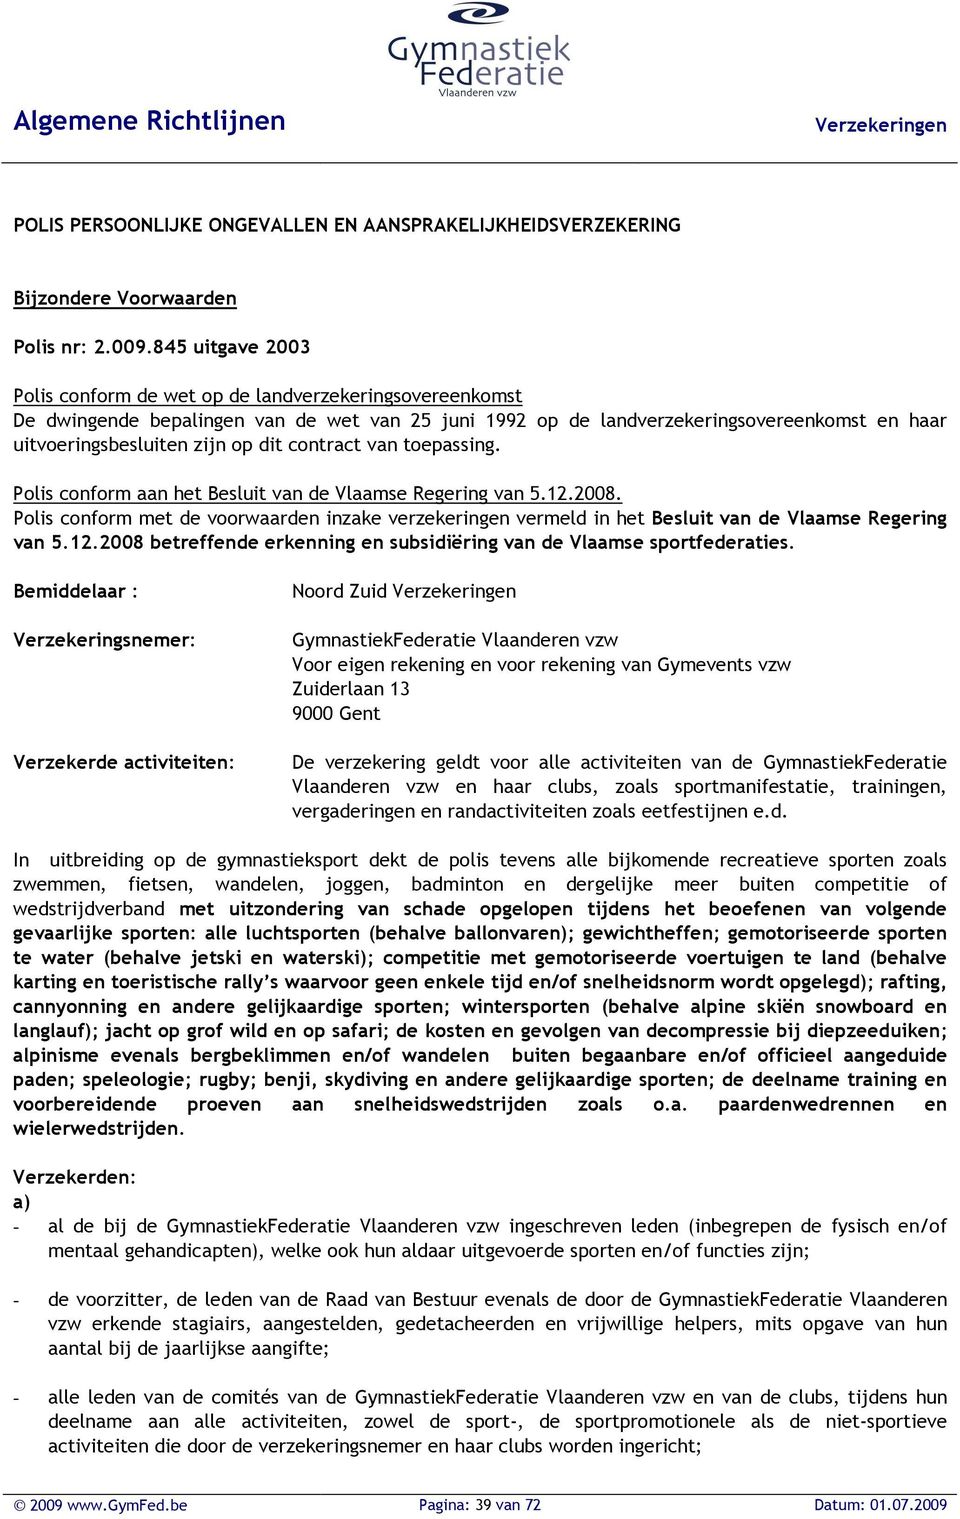 dit contract van toepassing. Polis conform aan het Besluit van de Vlaamse Regering van 5.12.2008.